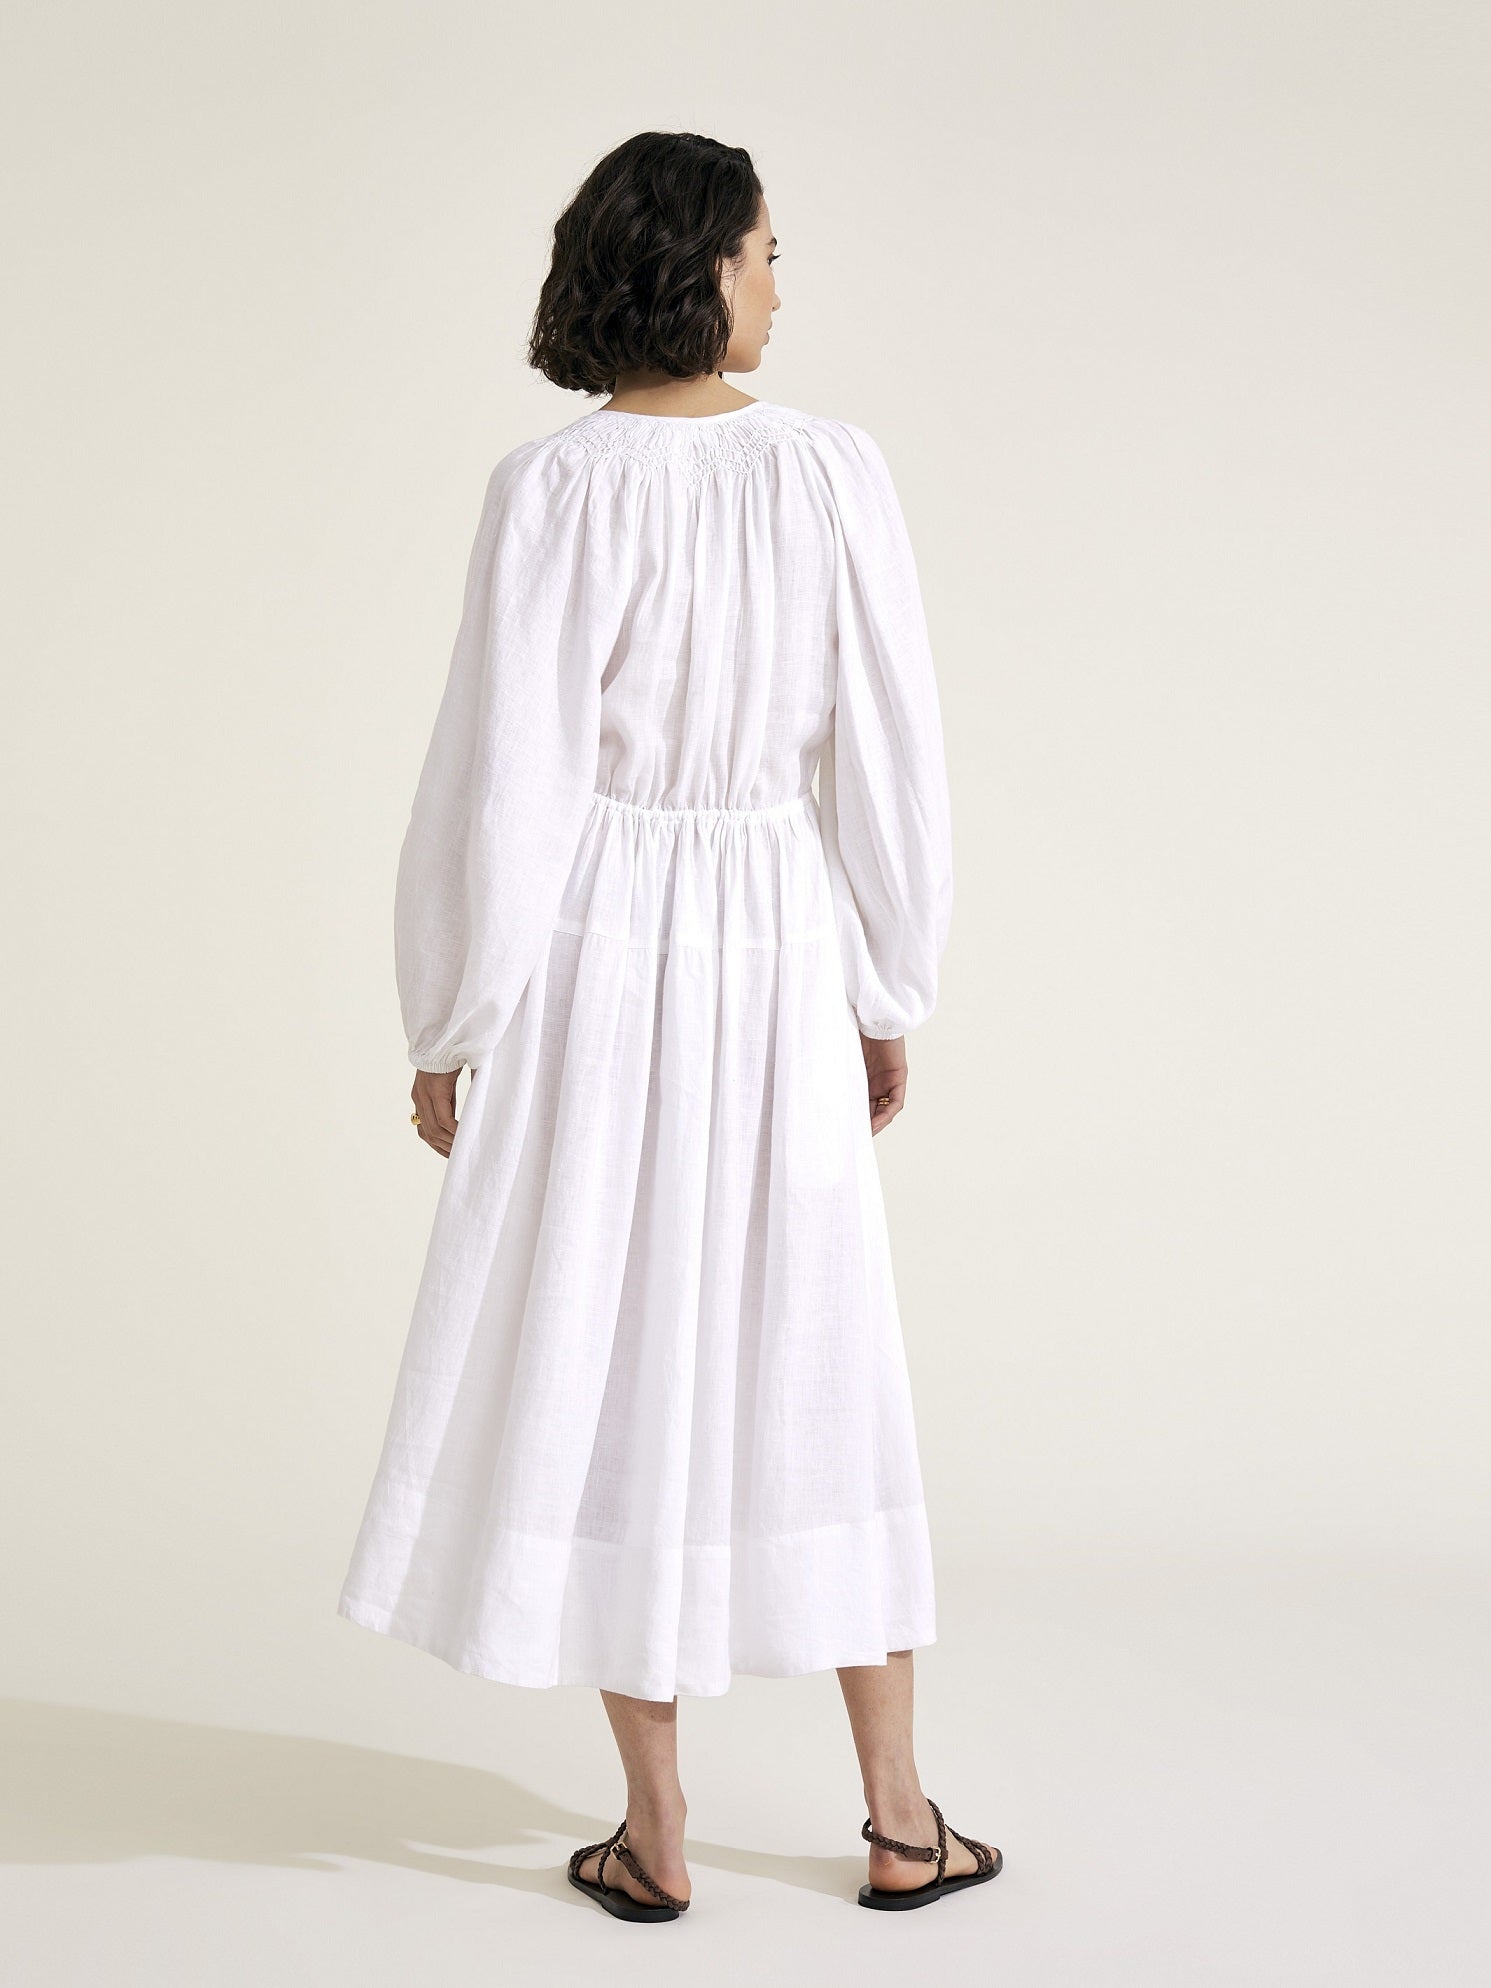 Victorine - White Linen Dress - Mondo Corsini